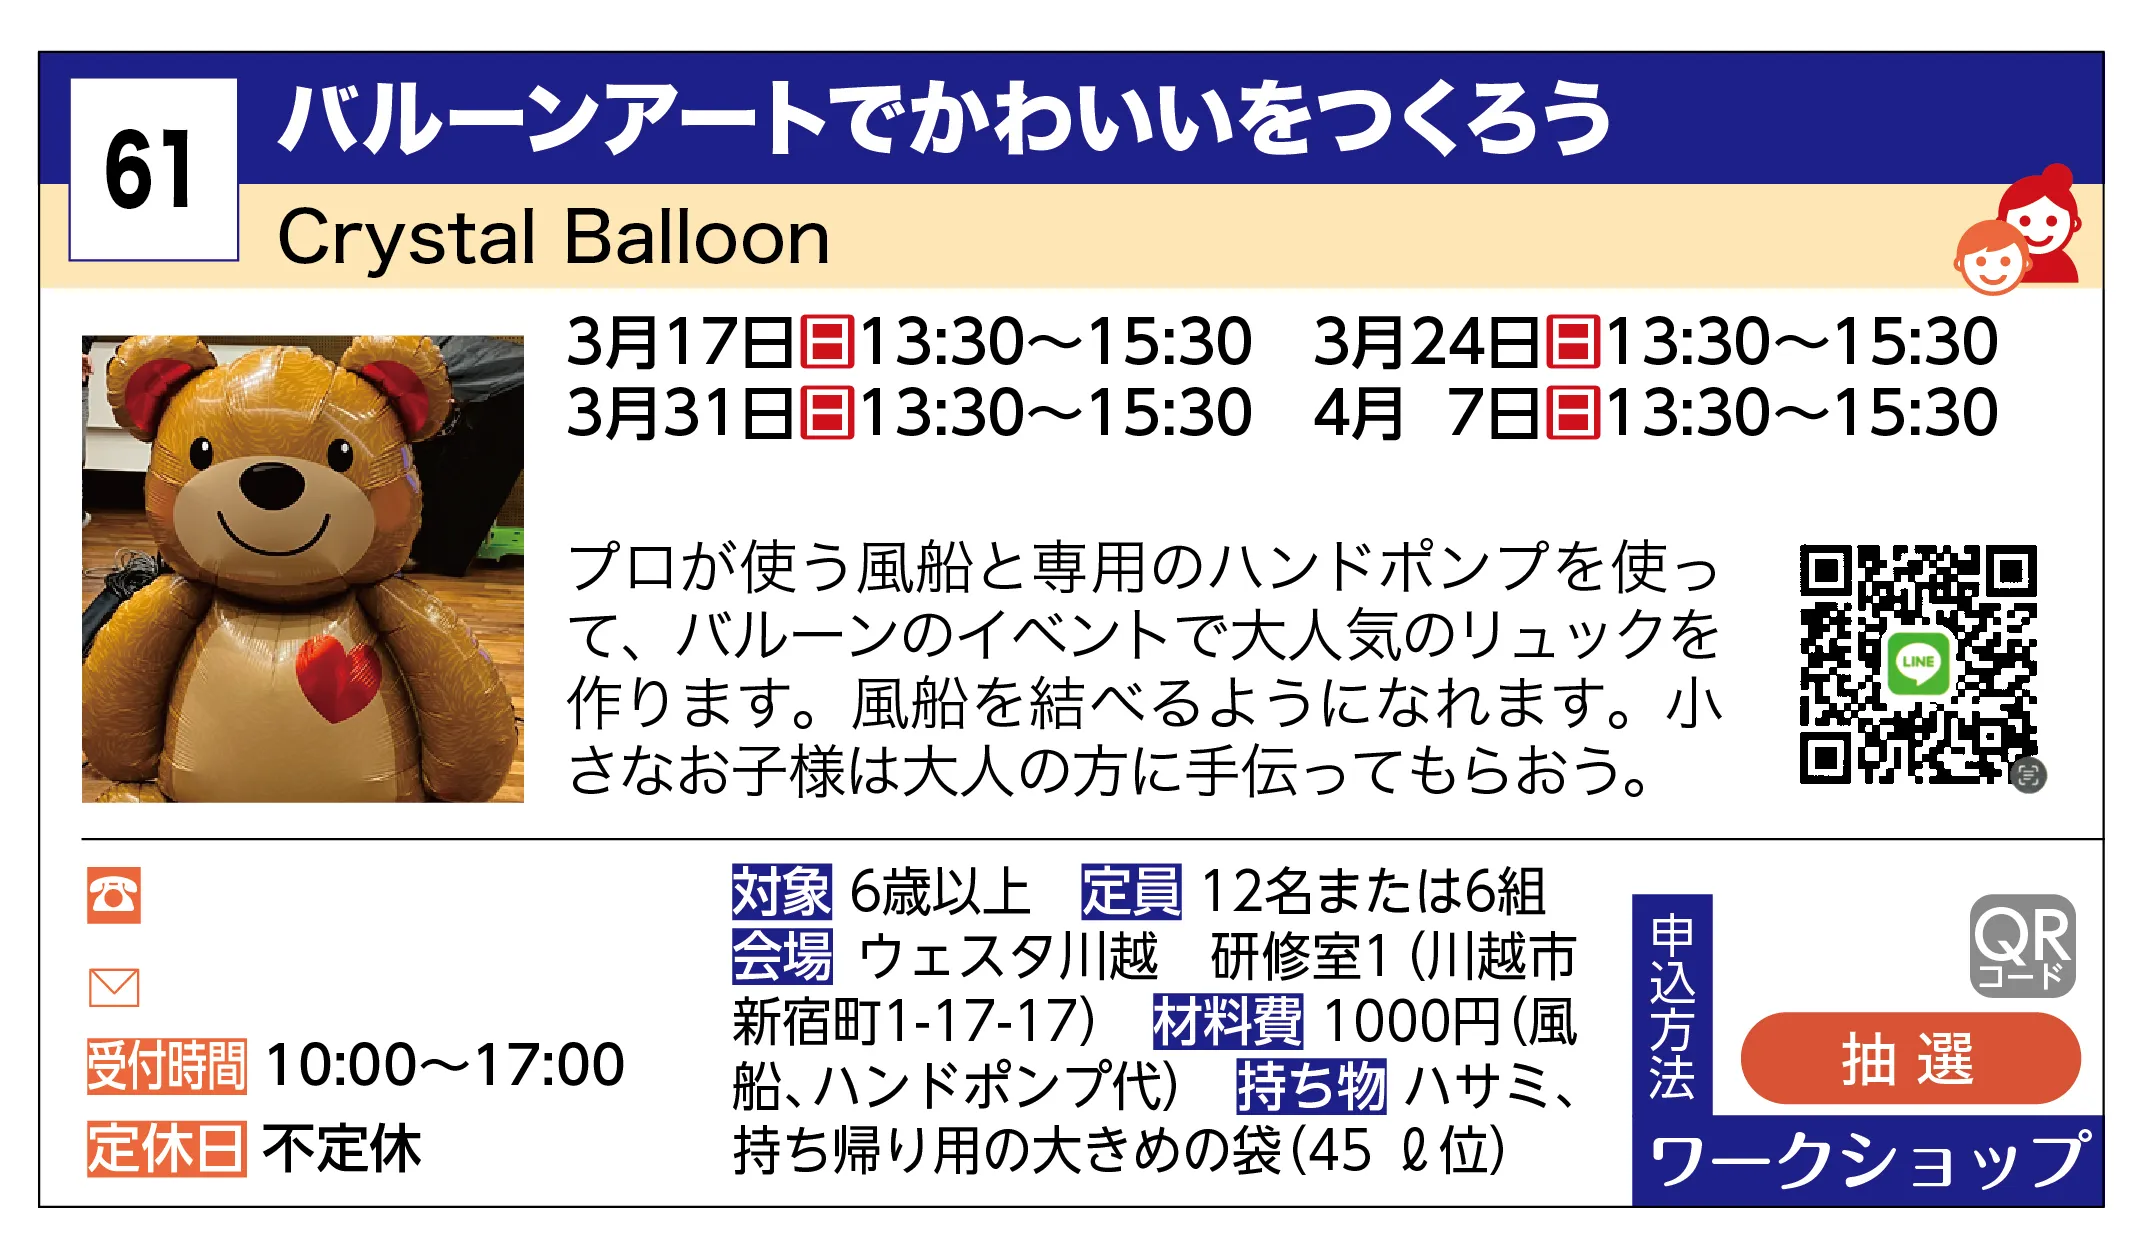 Crystal Balloon | バルーンアートでかわいいをつくろう | プロが使う風船と専用のハンドポンプを使って、バルーンのイベントで大人気のリュックを作ります。風船を結べるようになれます。小さなお子様は大人の方に手伝ってもらおう。